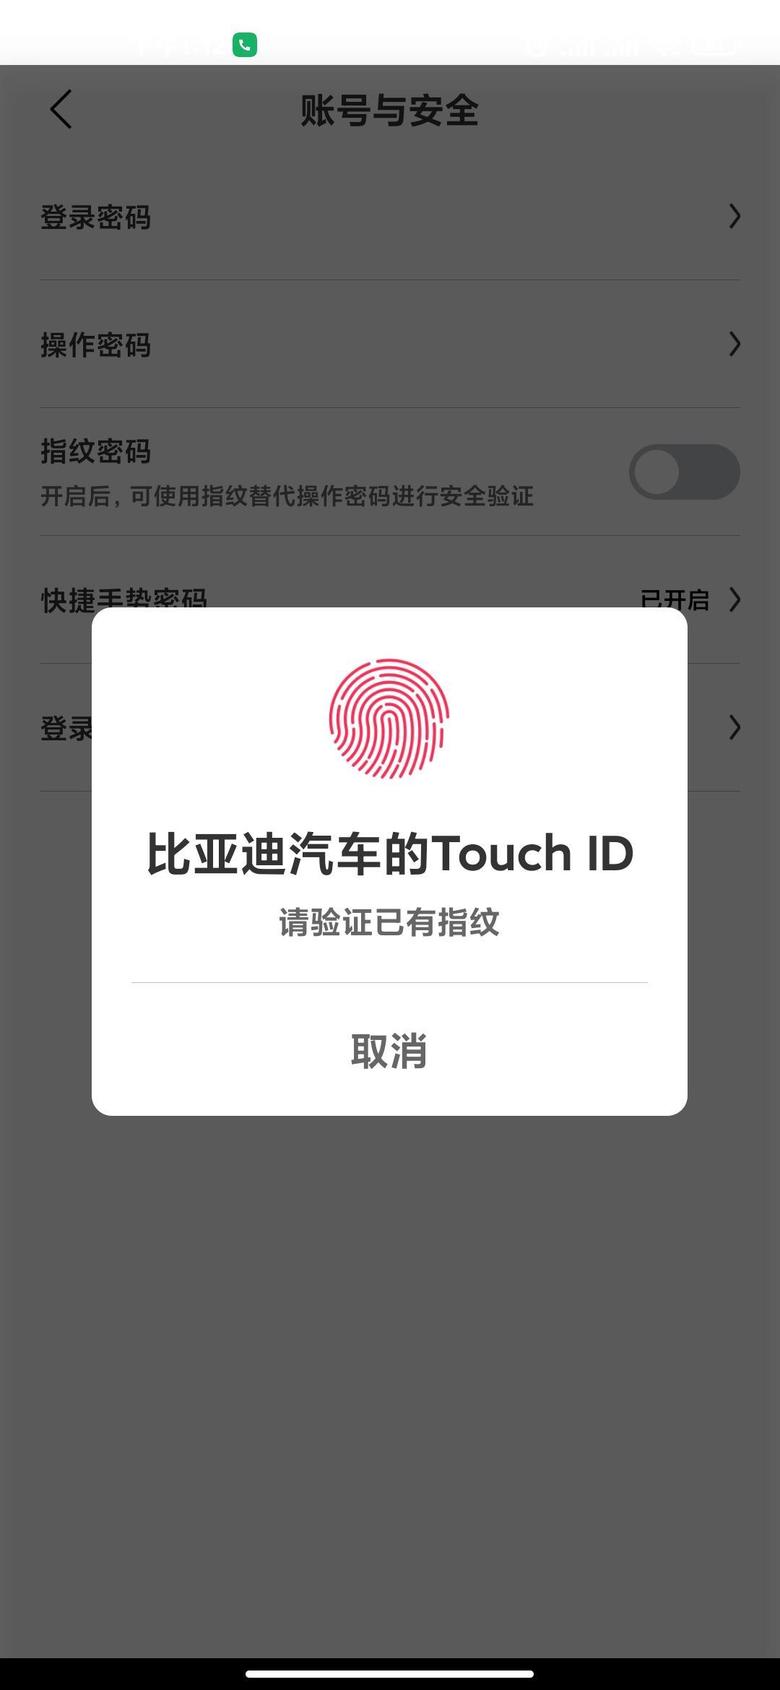 秦plus ev急急比亚迪汽车的Touchid请验证已有指纹 ----这是什么情况？我的手机把指纹重新录入了一遍，成这样了，怎么把app的指纹调出来？